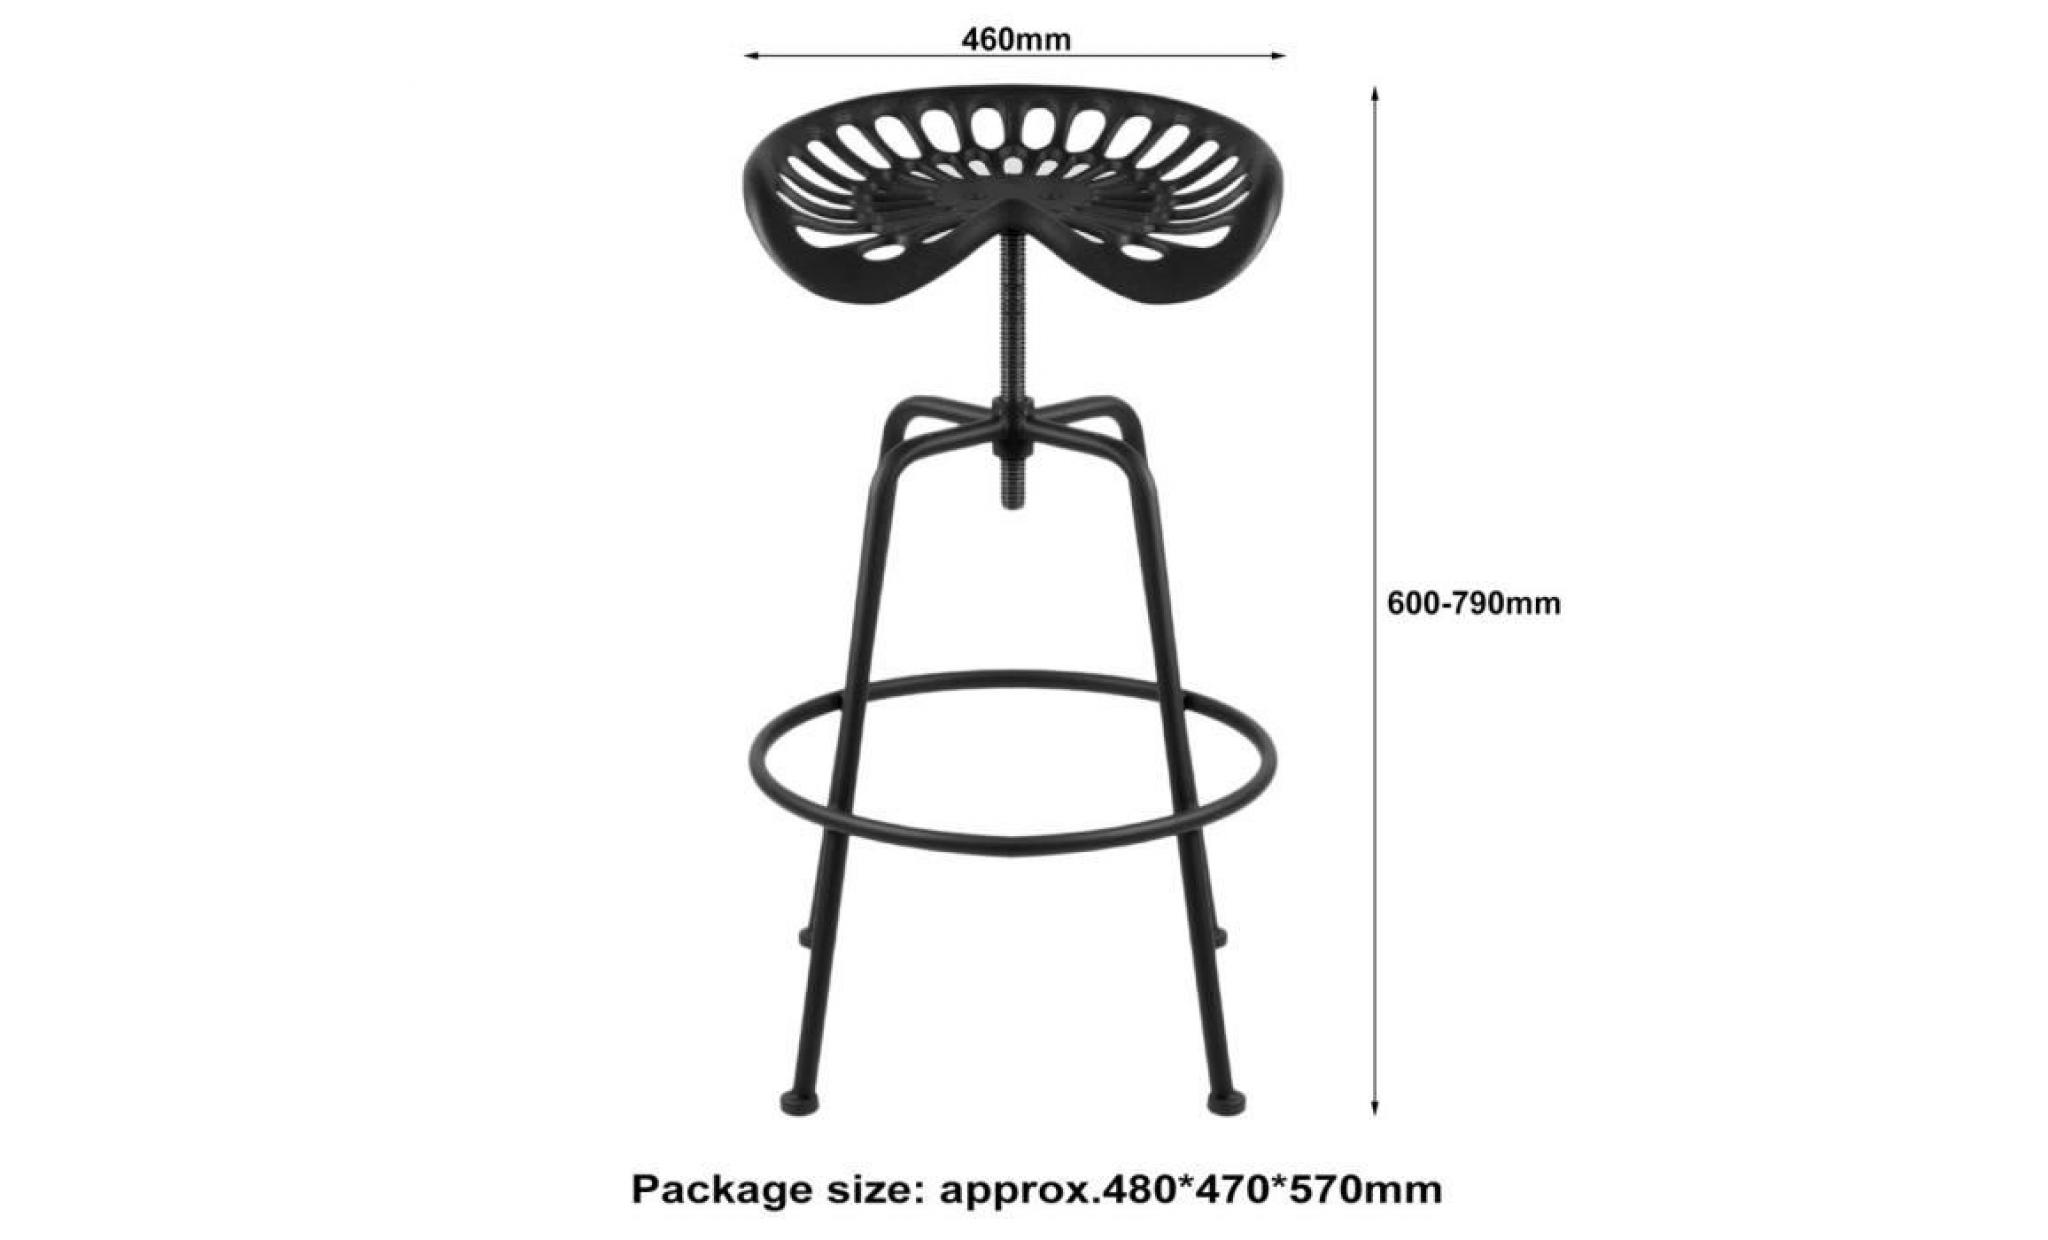 siège de tracteur tractor chaise tabouret hauteur réglable design industriel bar   noir pas cher